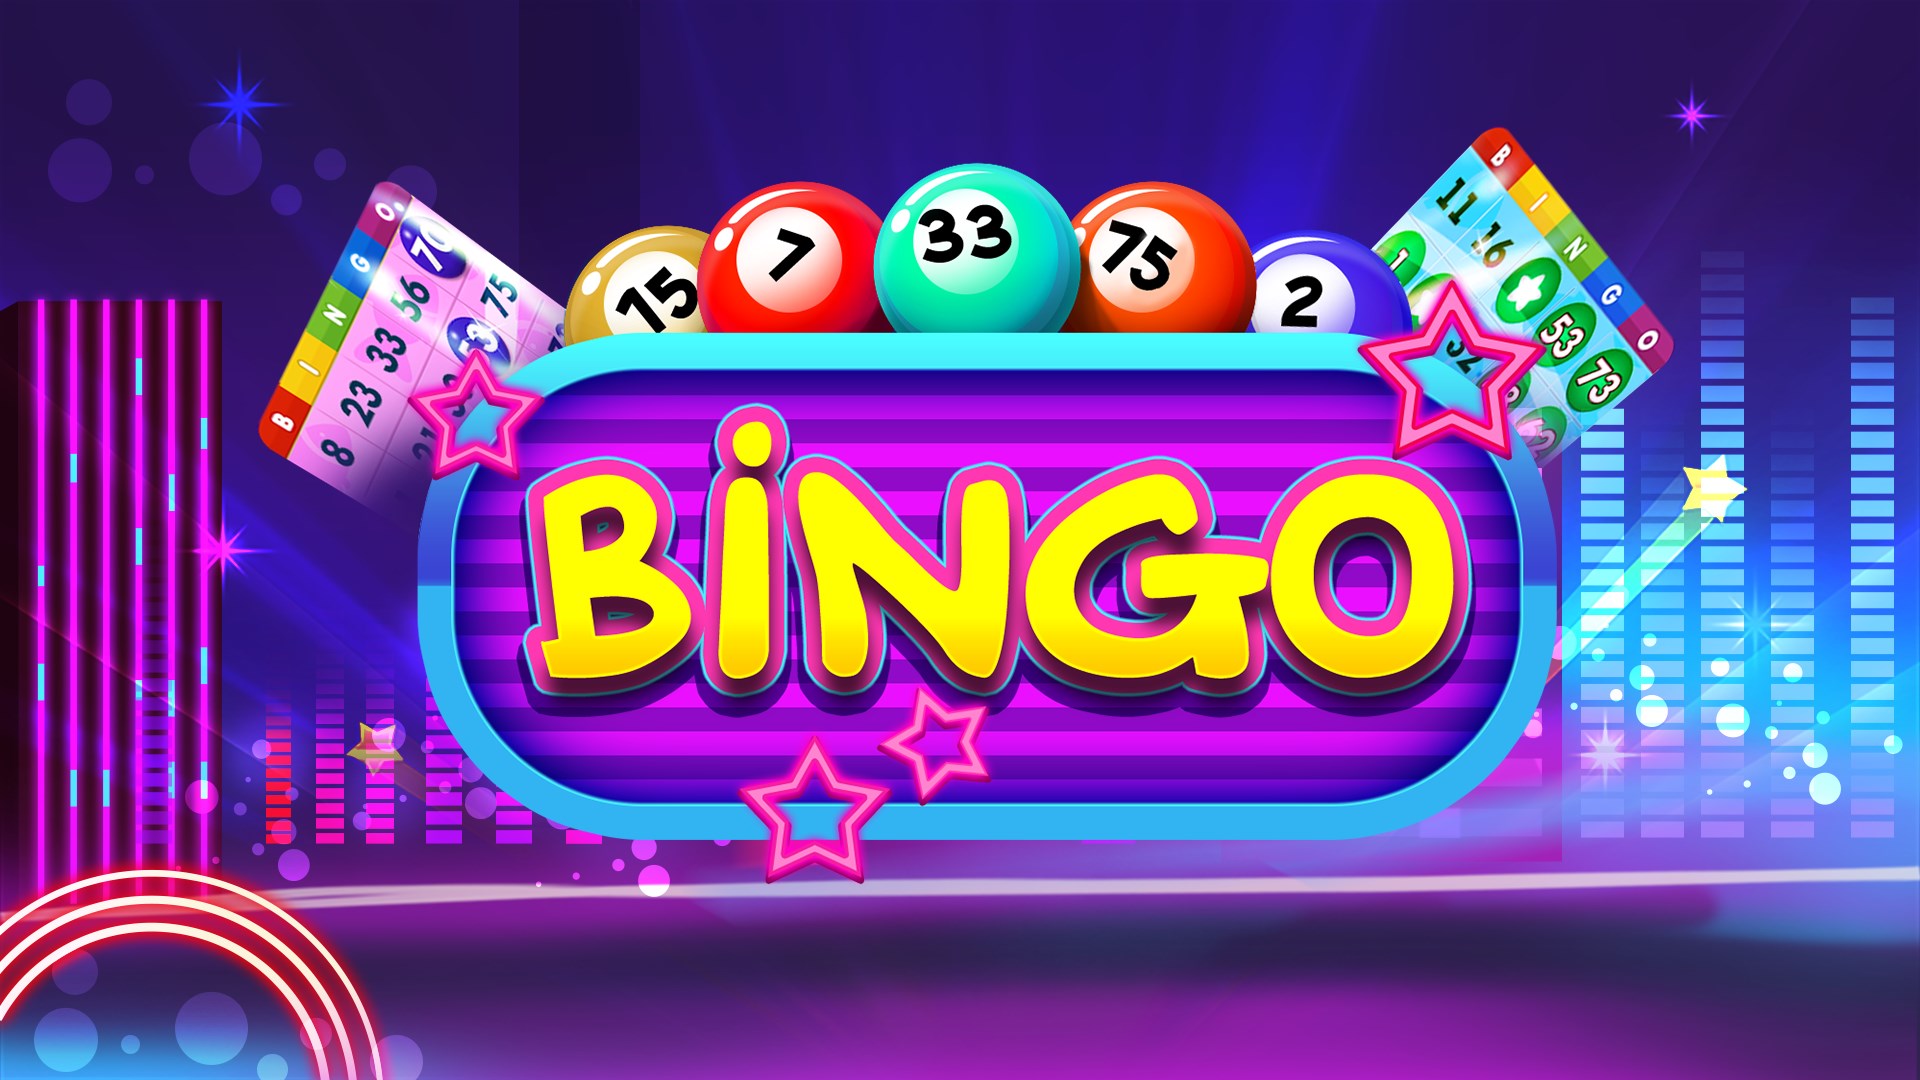 Casino bingo online free покер регистрация с деньгами на счет при регистрации